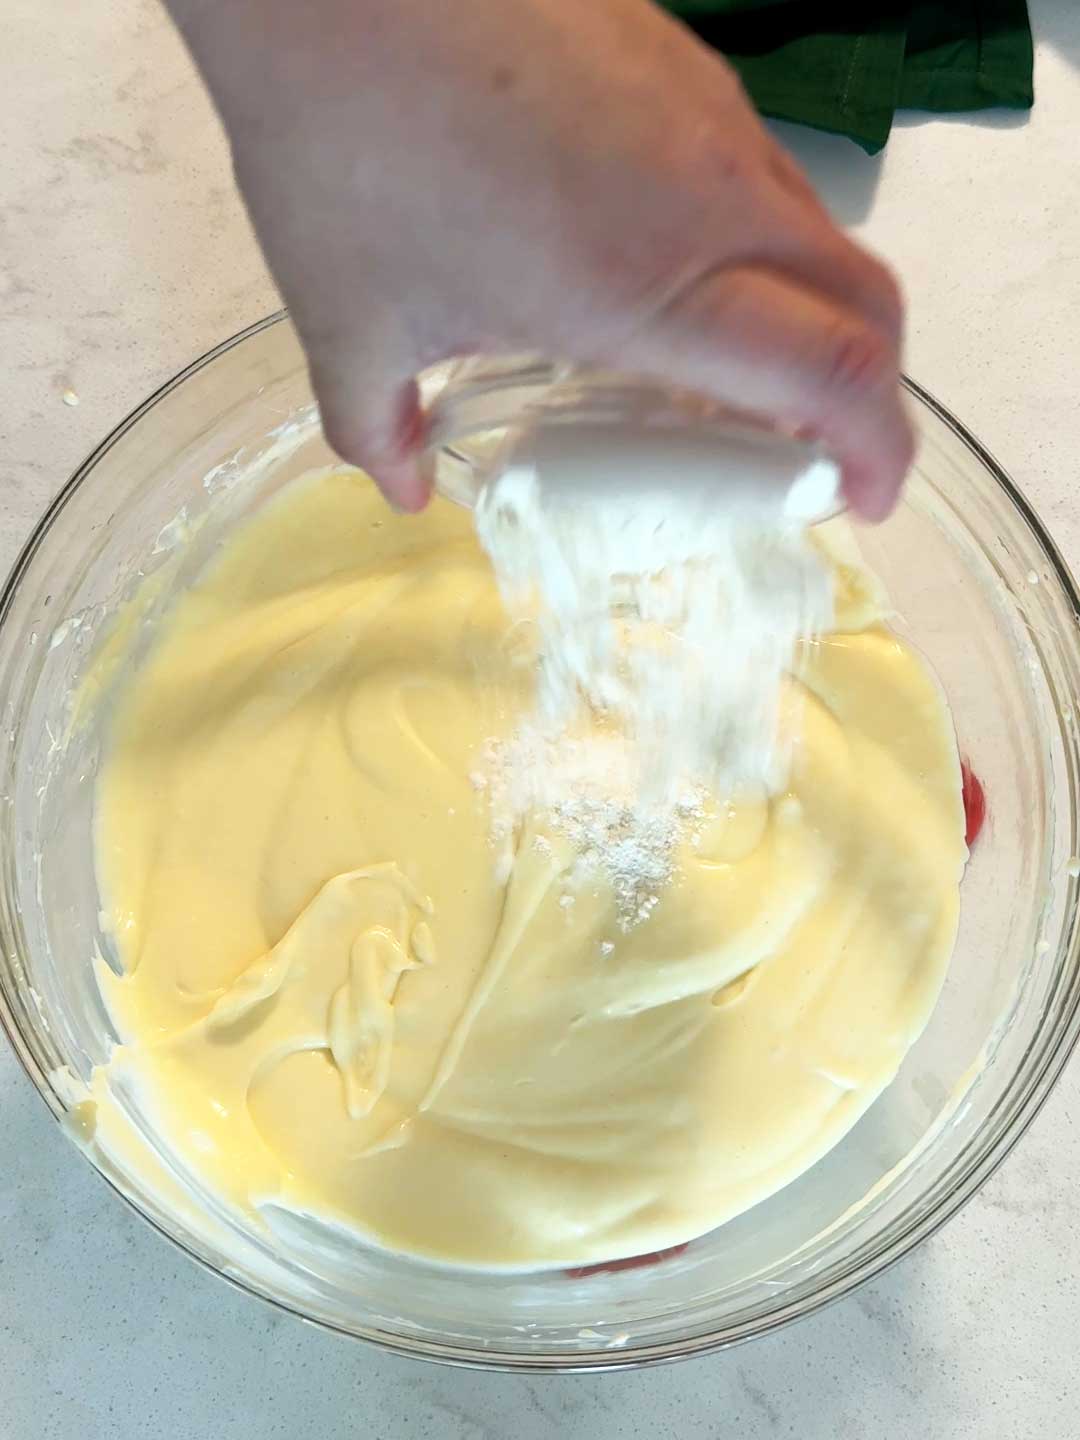 Adding flour